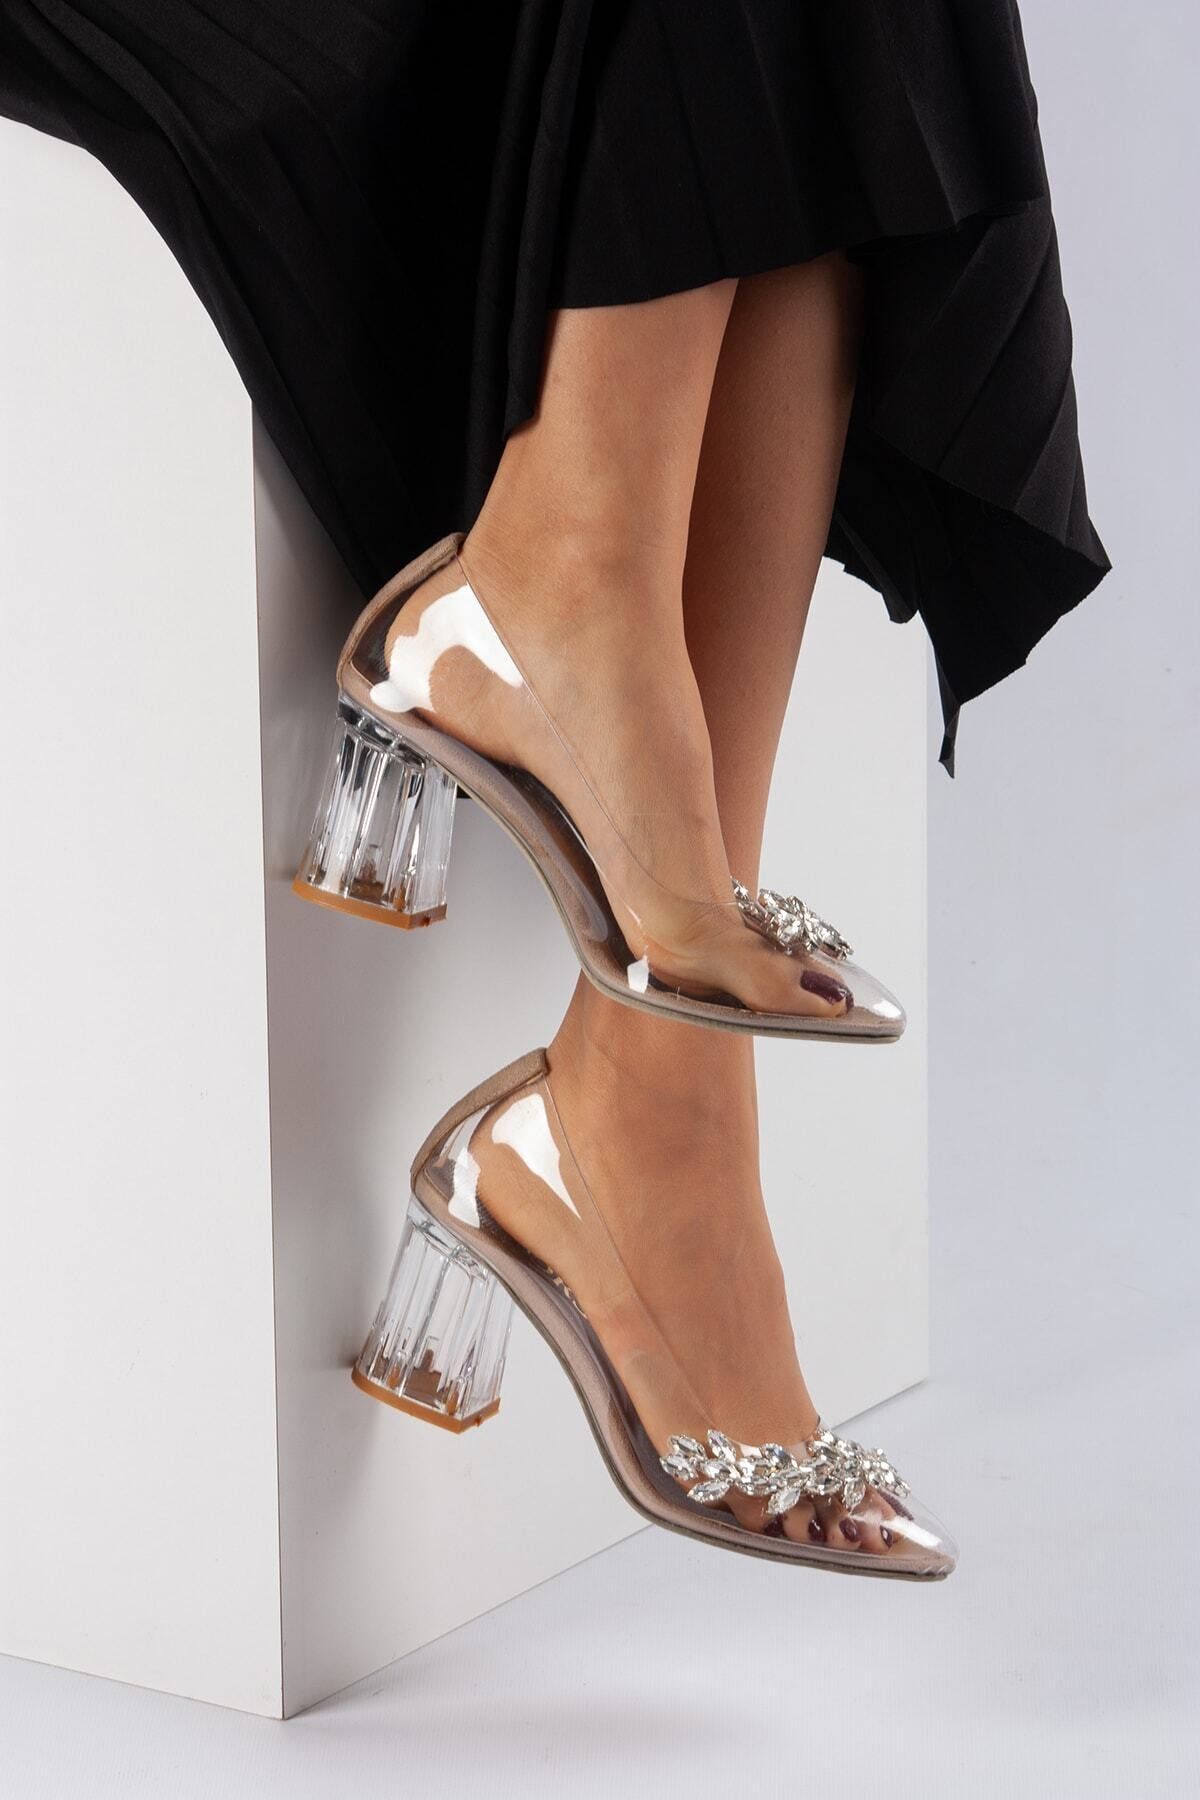 FORS SHOES Princess Ten Şeffaf Taş Detaylı Kadın Topuklu Ayakkabı 8 Cm